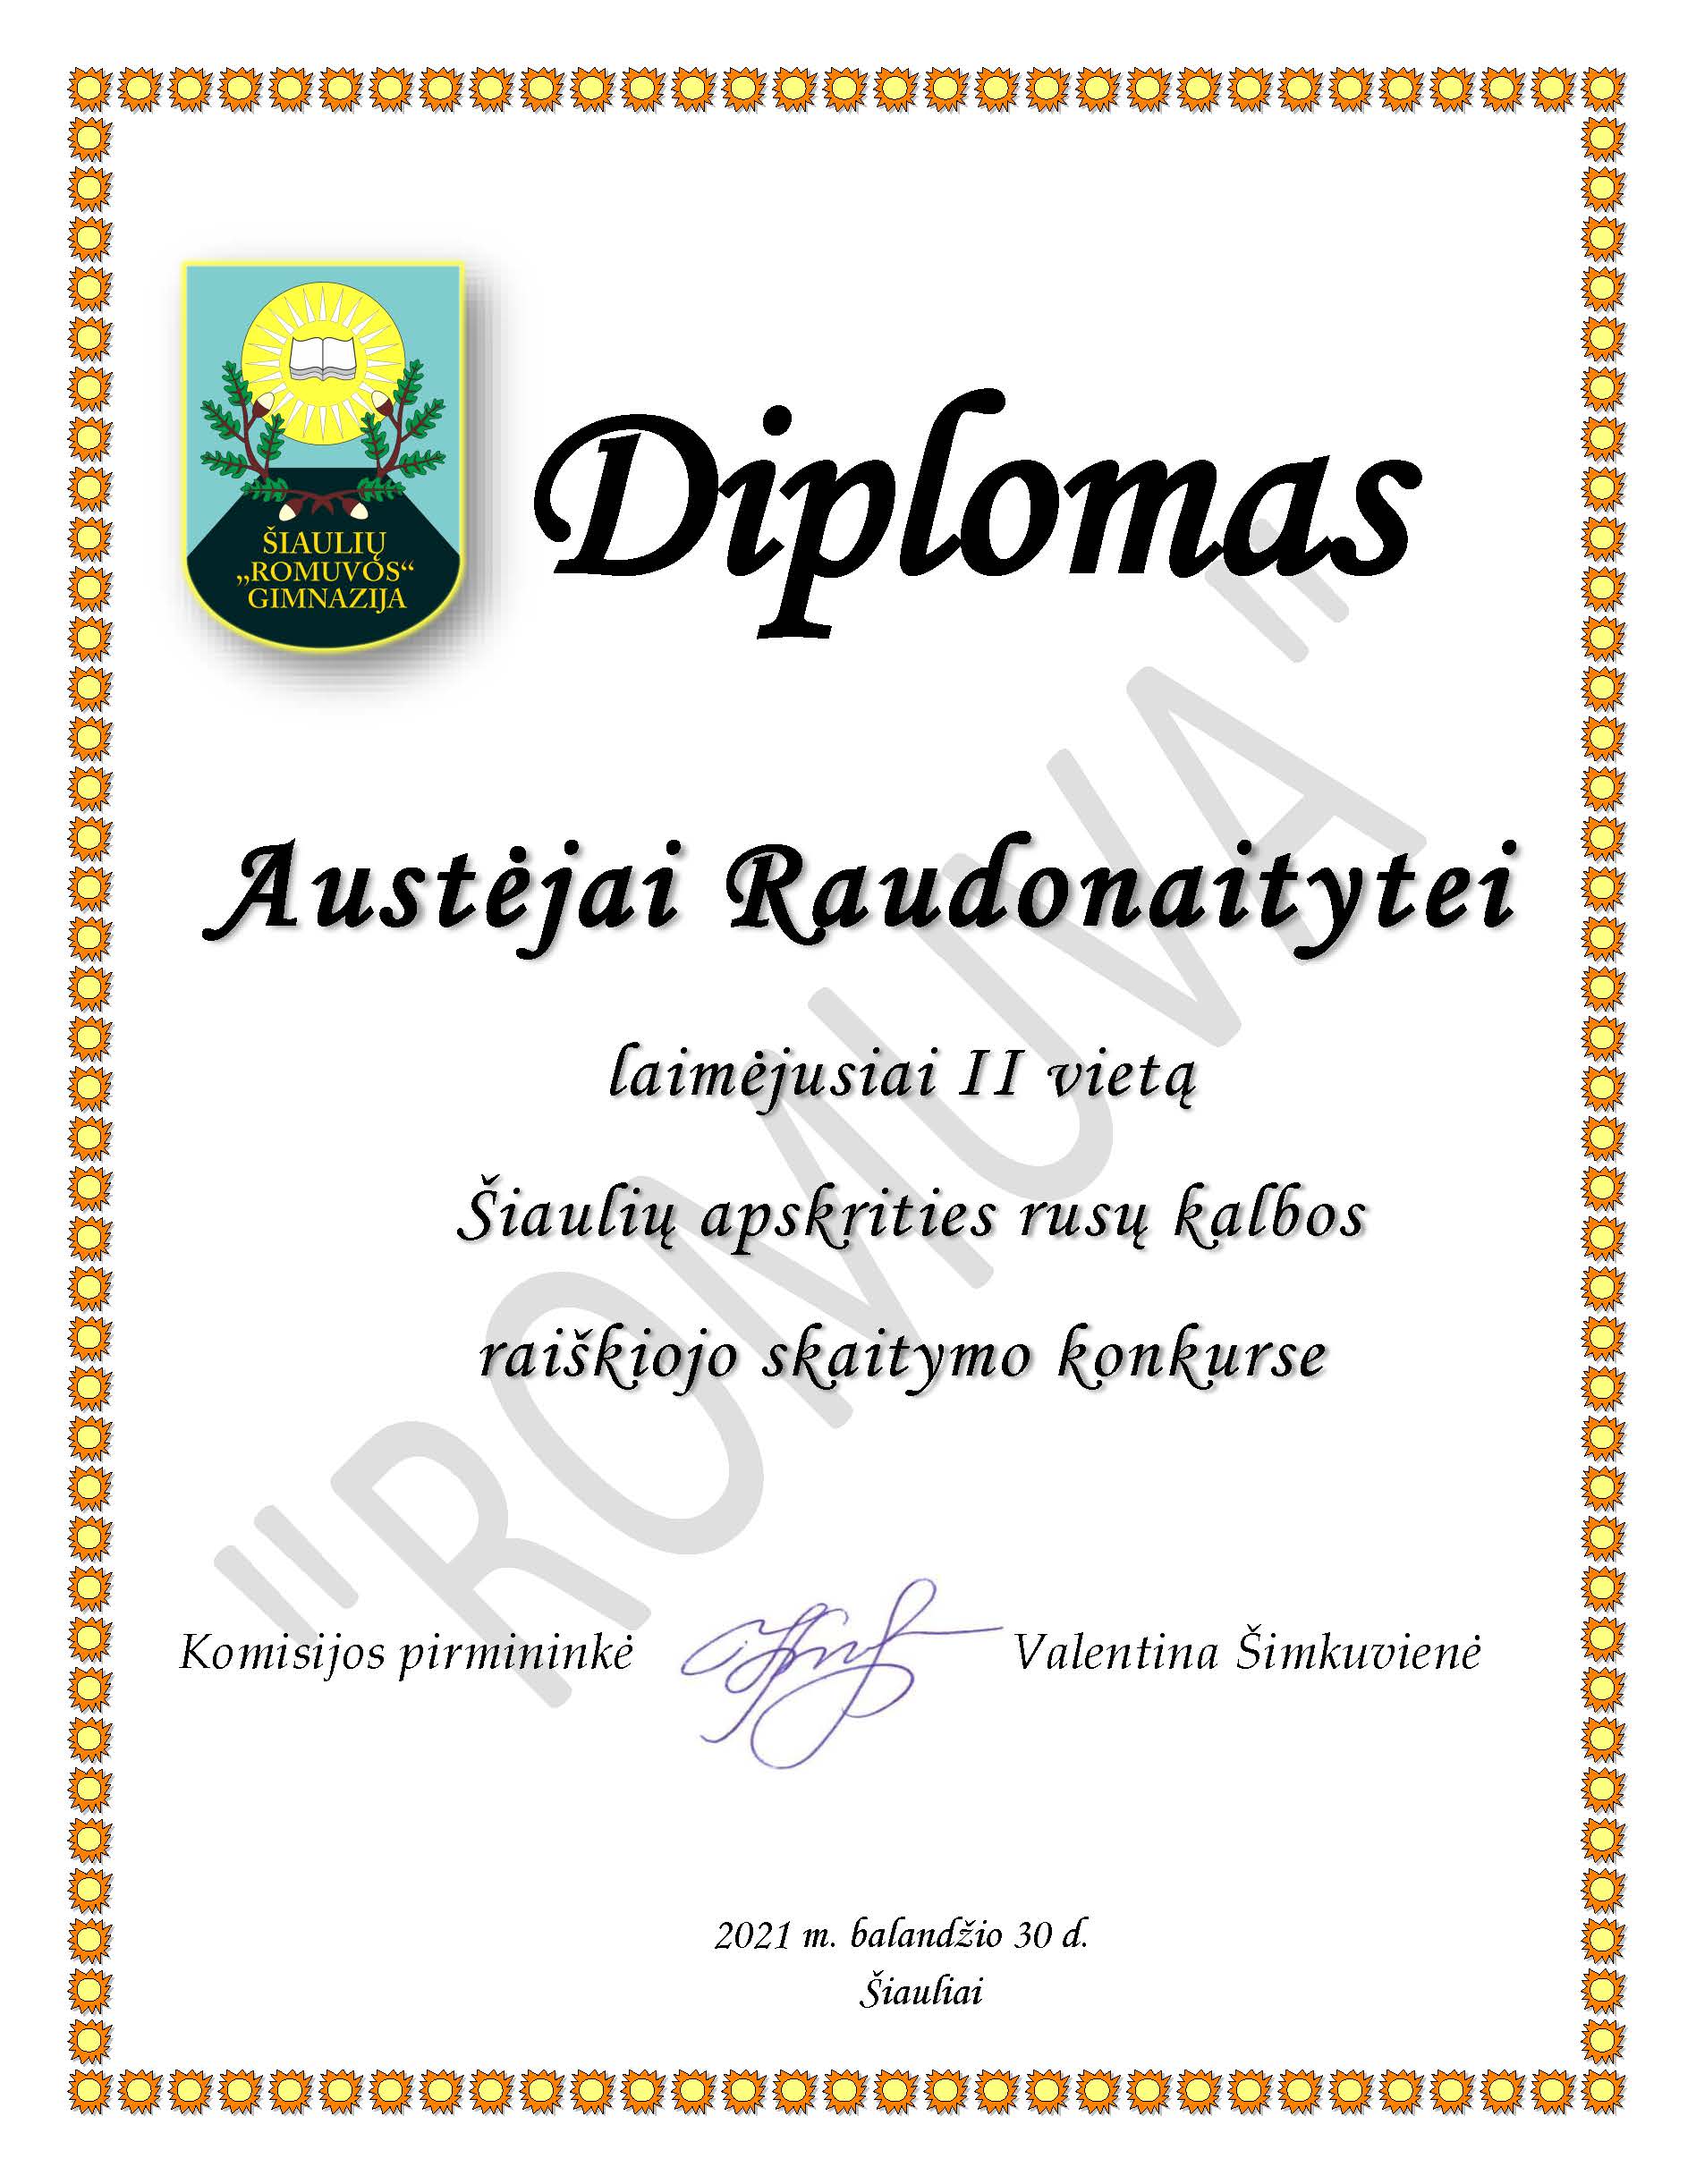 Diplomas Austėja Raudonaityte